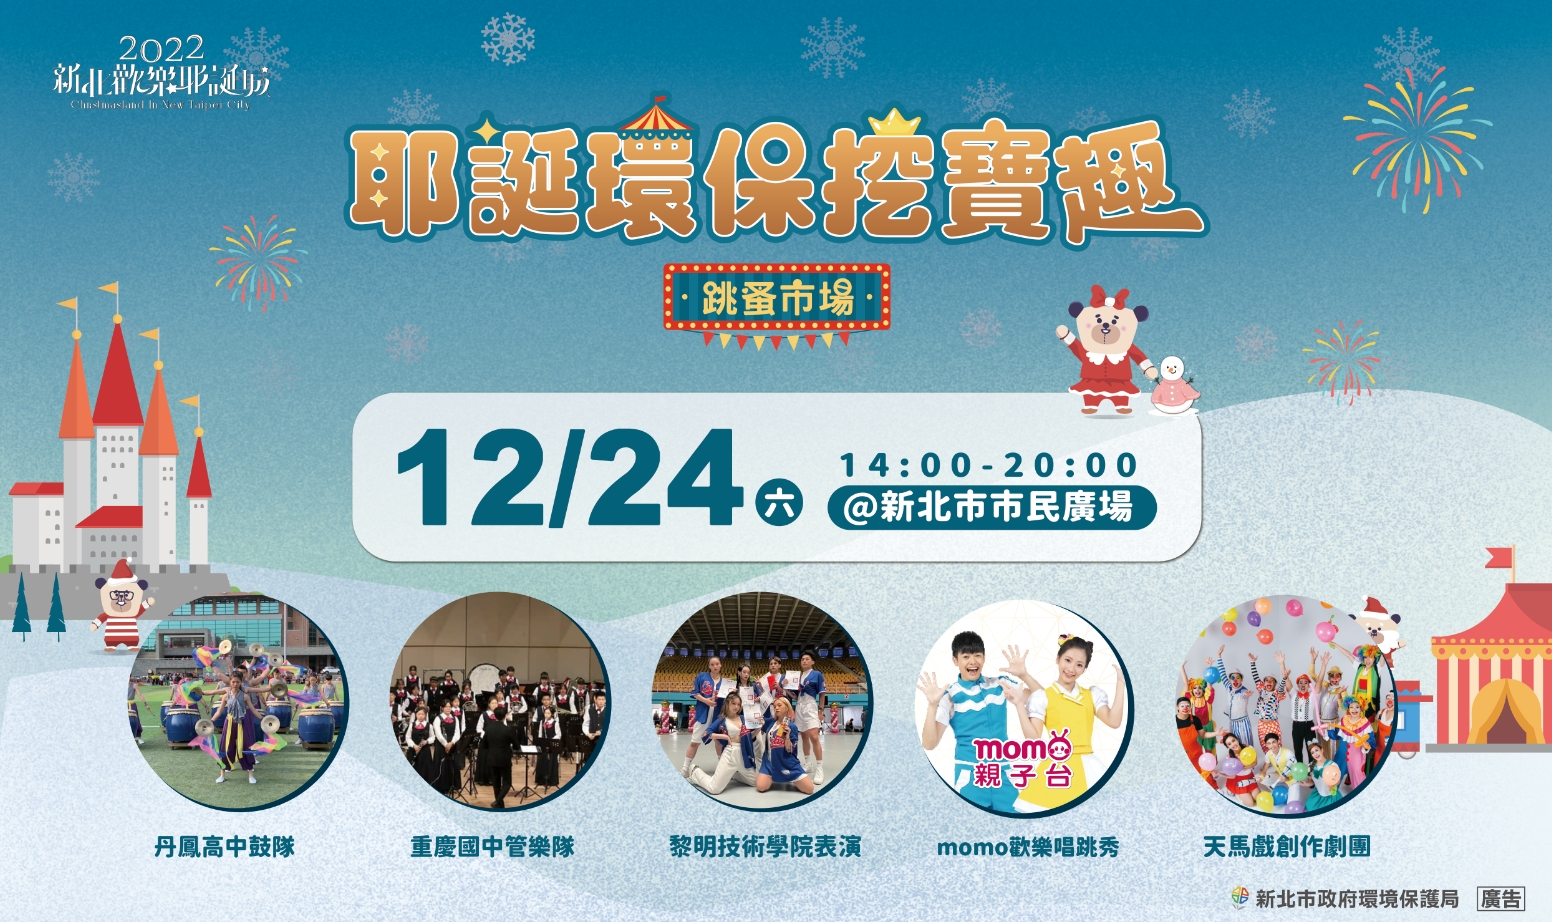 台北二手市集「耶誕環保挖寶趣」同步安排精采表演節目